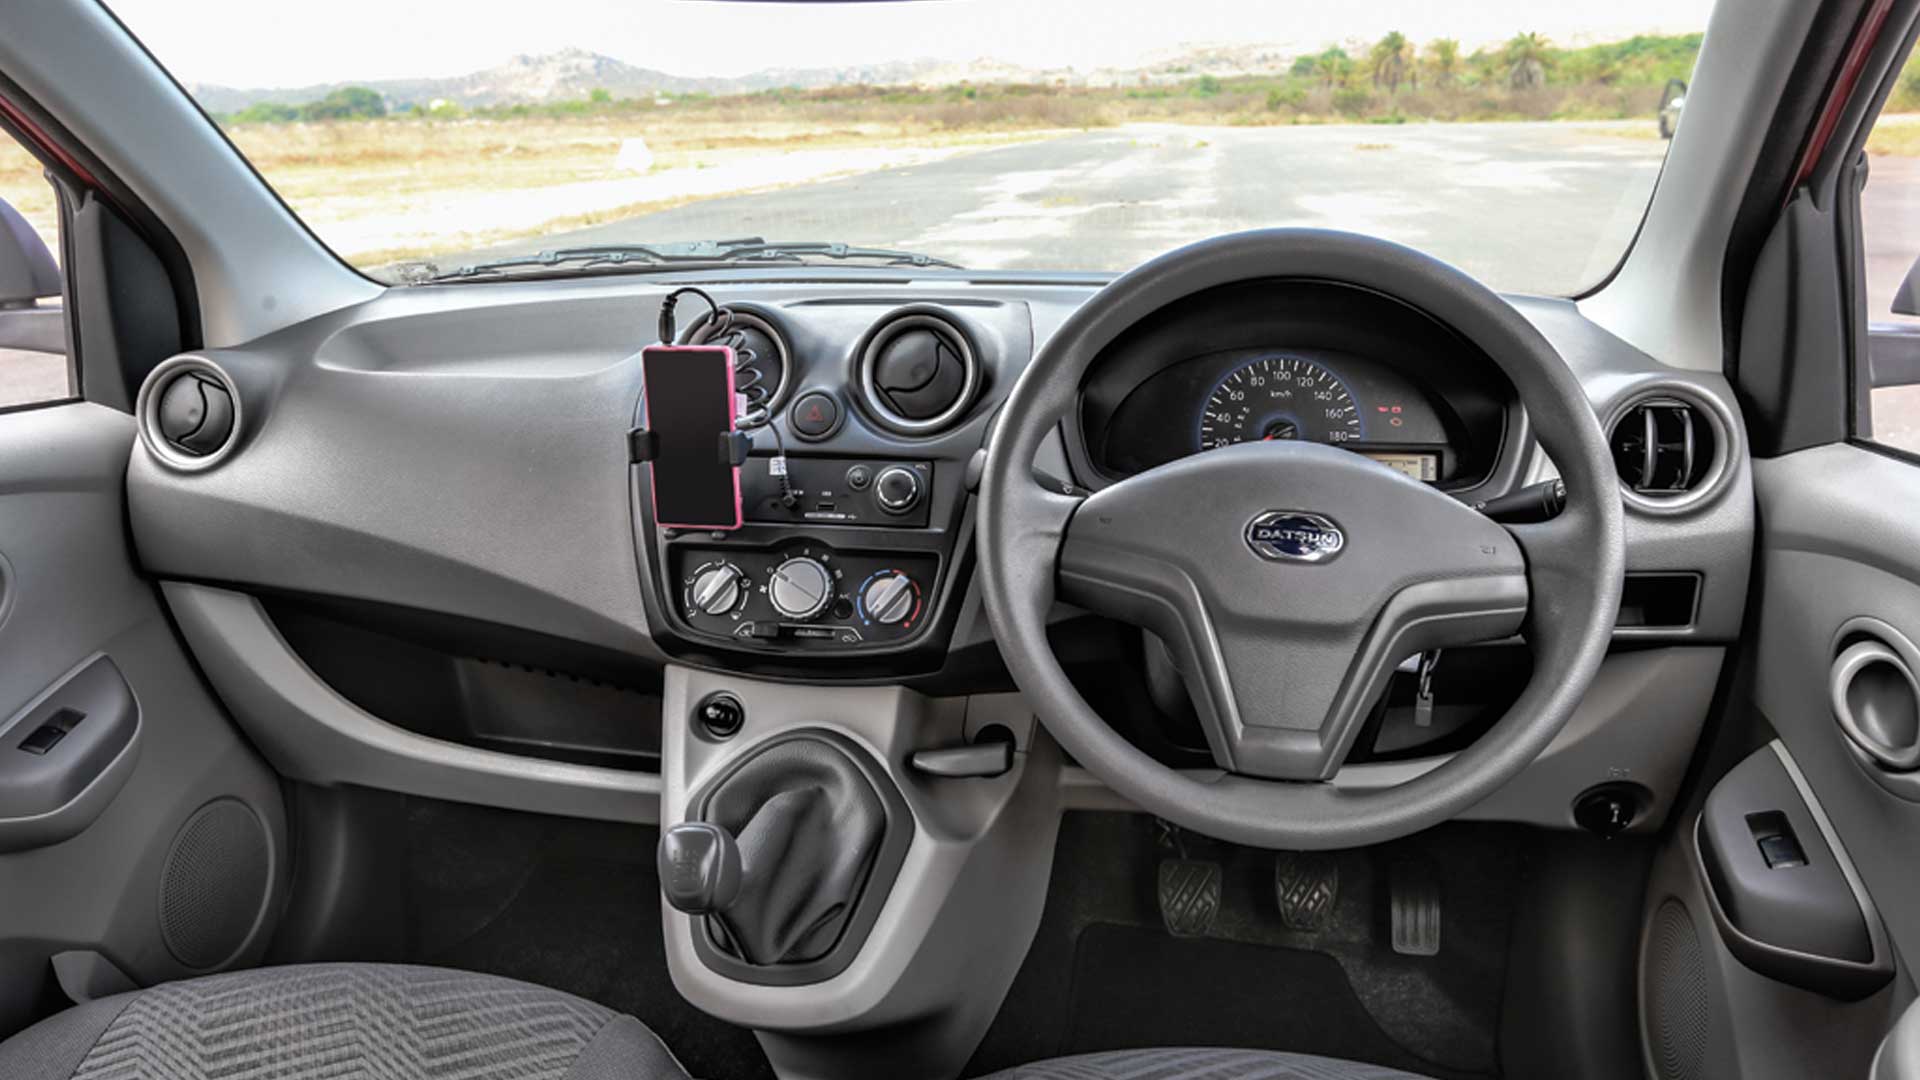 Datsun Go 2014 A Interior Car Photos Overdrive